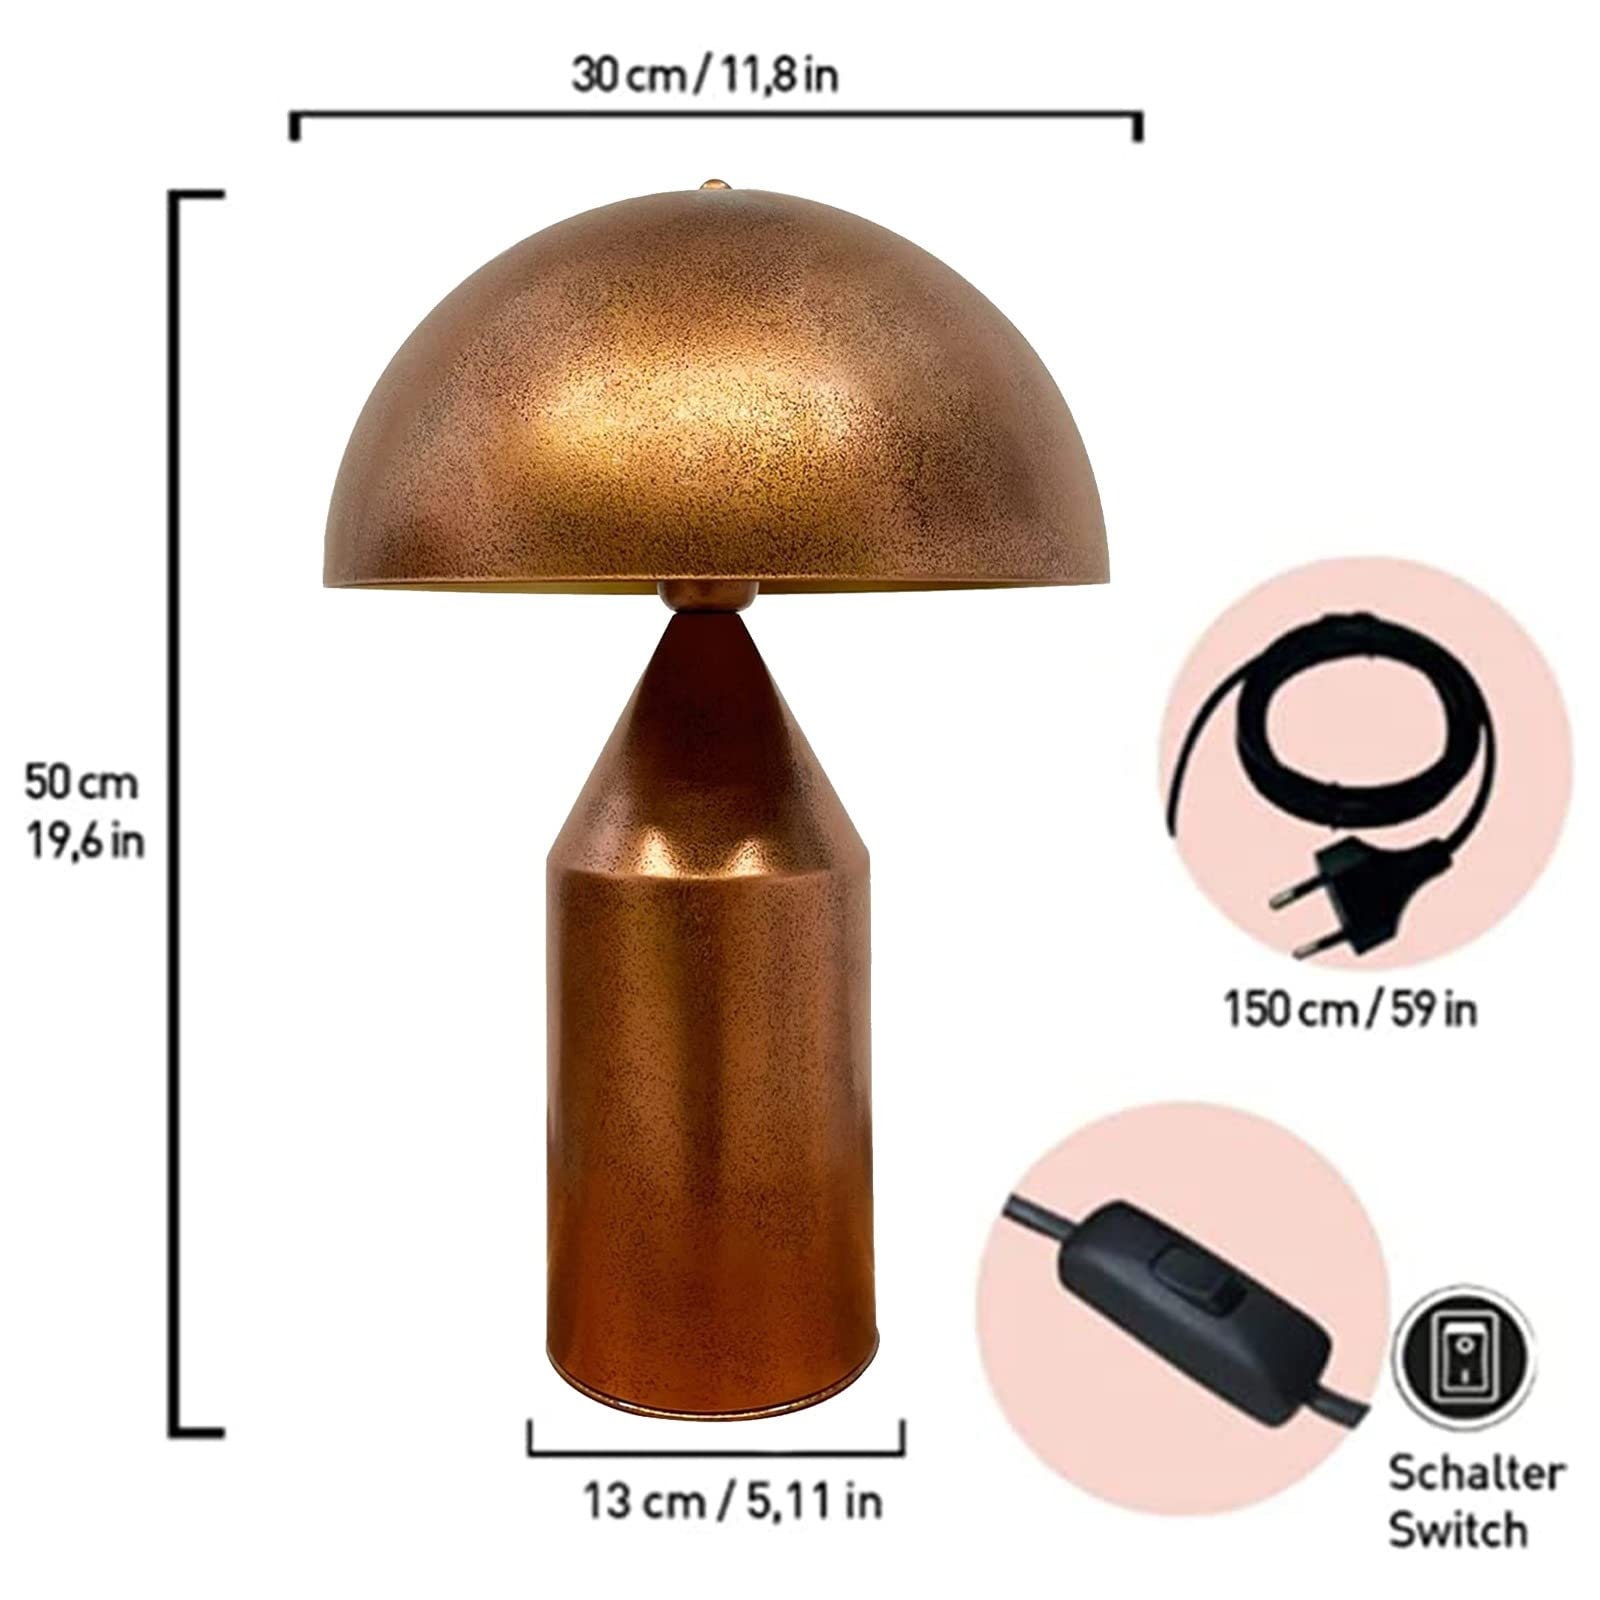 Vintage 12.5” Copper Colored Metal Electric Lantern Desk Lamp Novelty Light